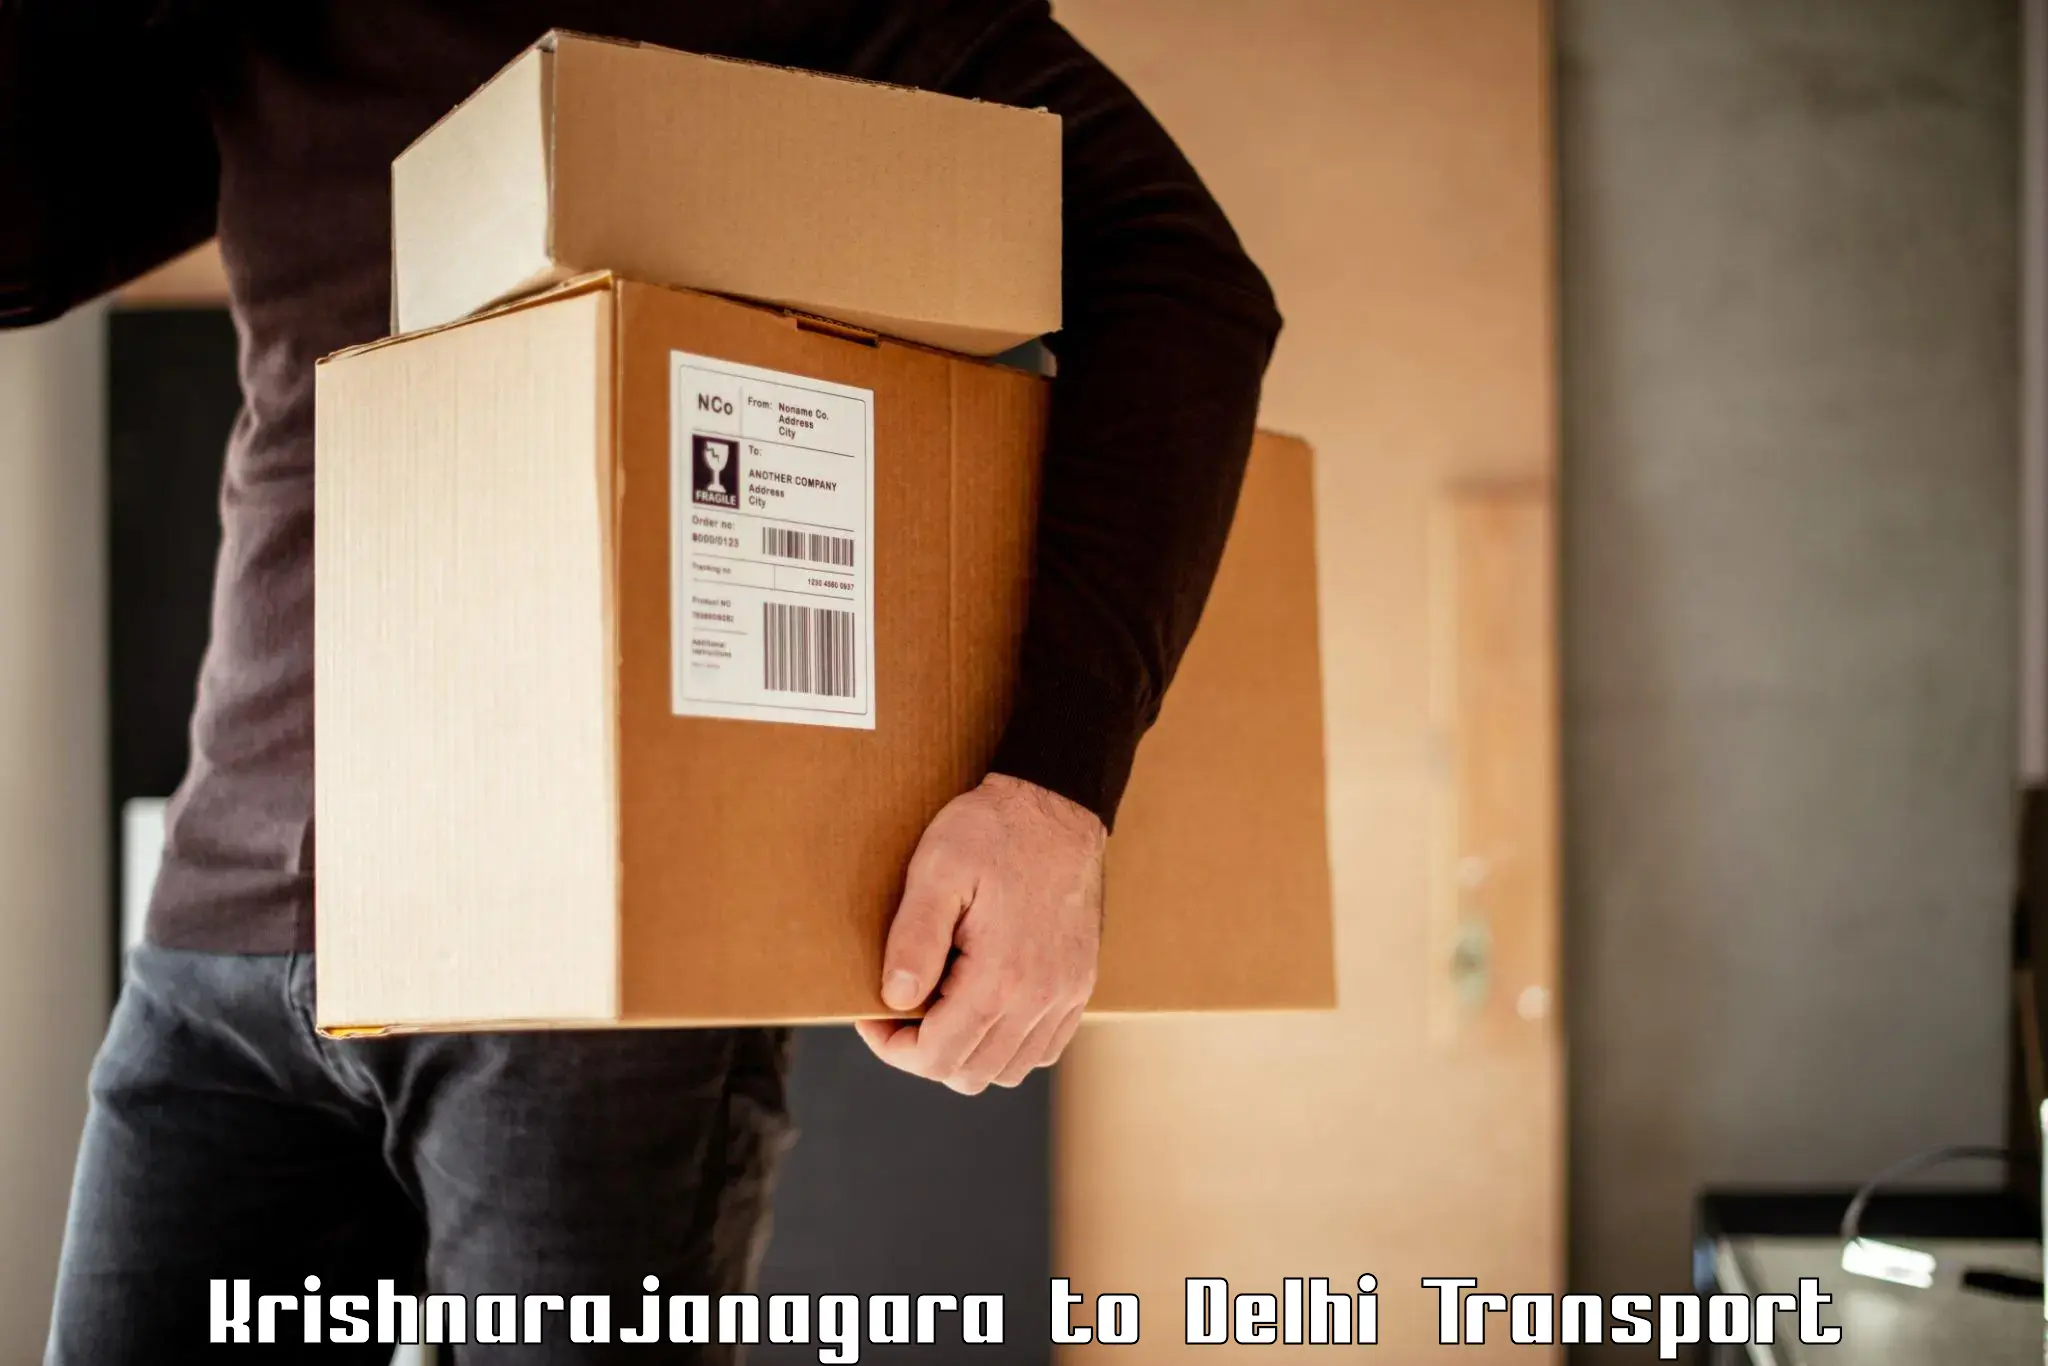 Commercial transport service Krishnarajanagara to Jawaharlal Nehru University New Delhi